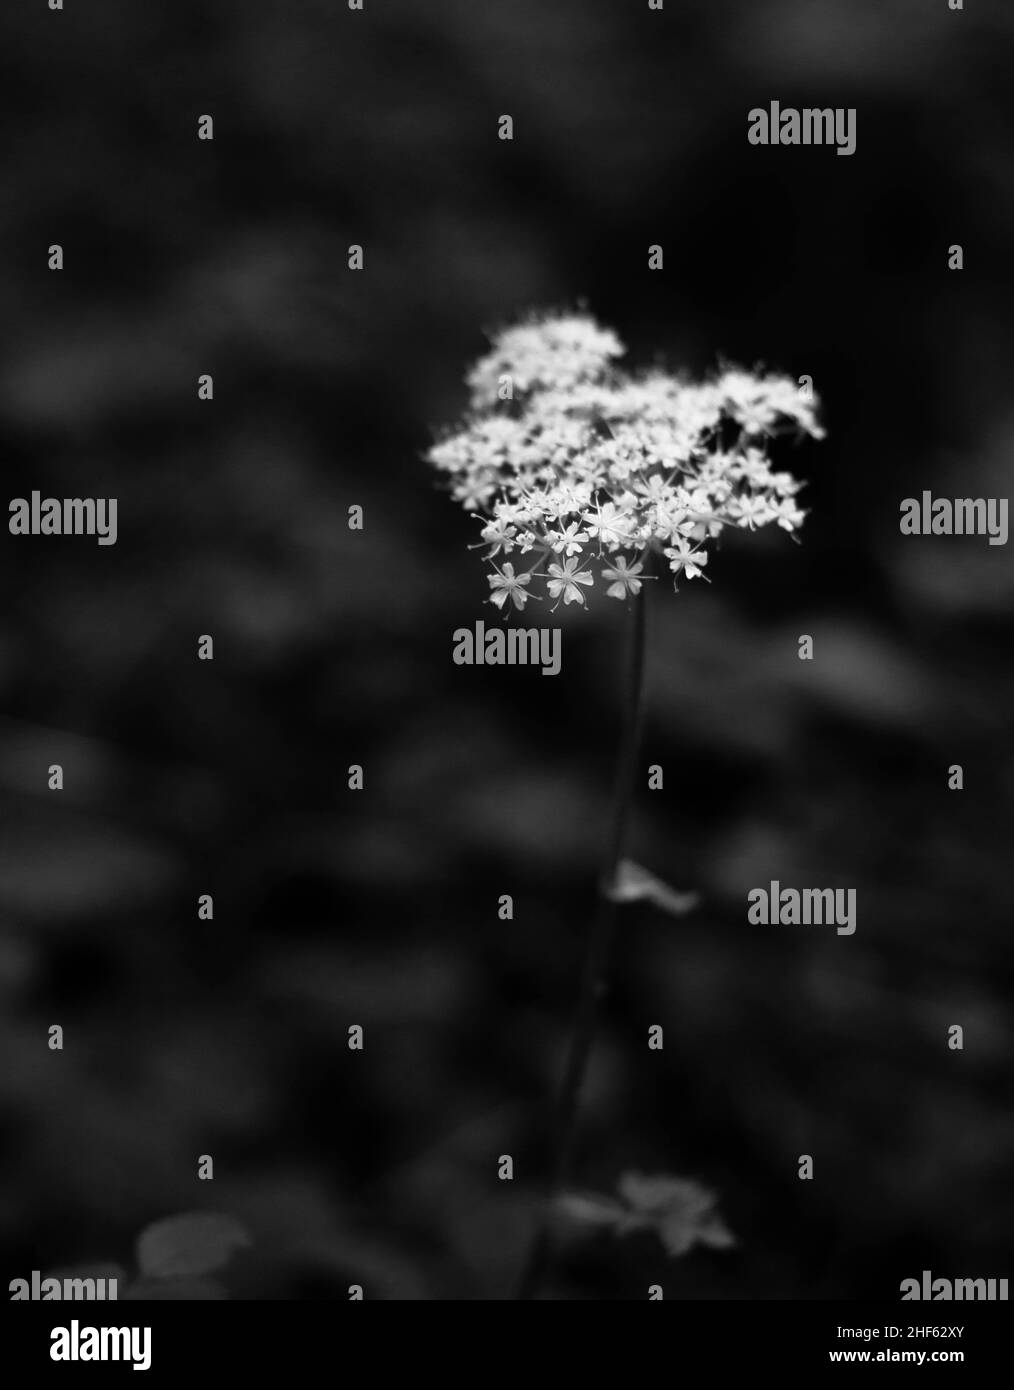 Testa di fiore bianca su sfondo nero. Pensata per l'uso, appendere a parete, sfondo o scheda grafica. Foto Stock